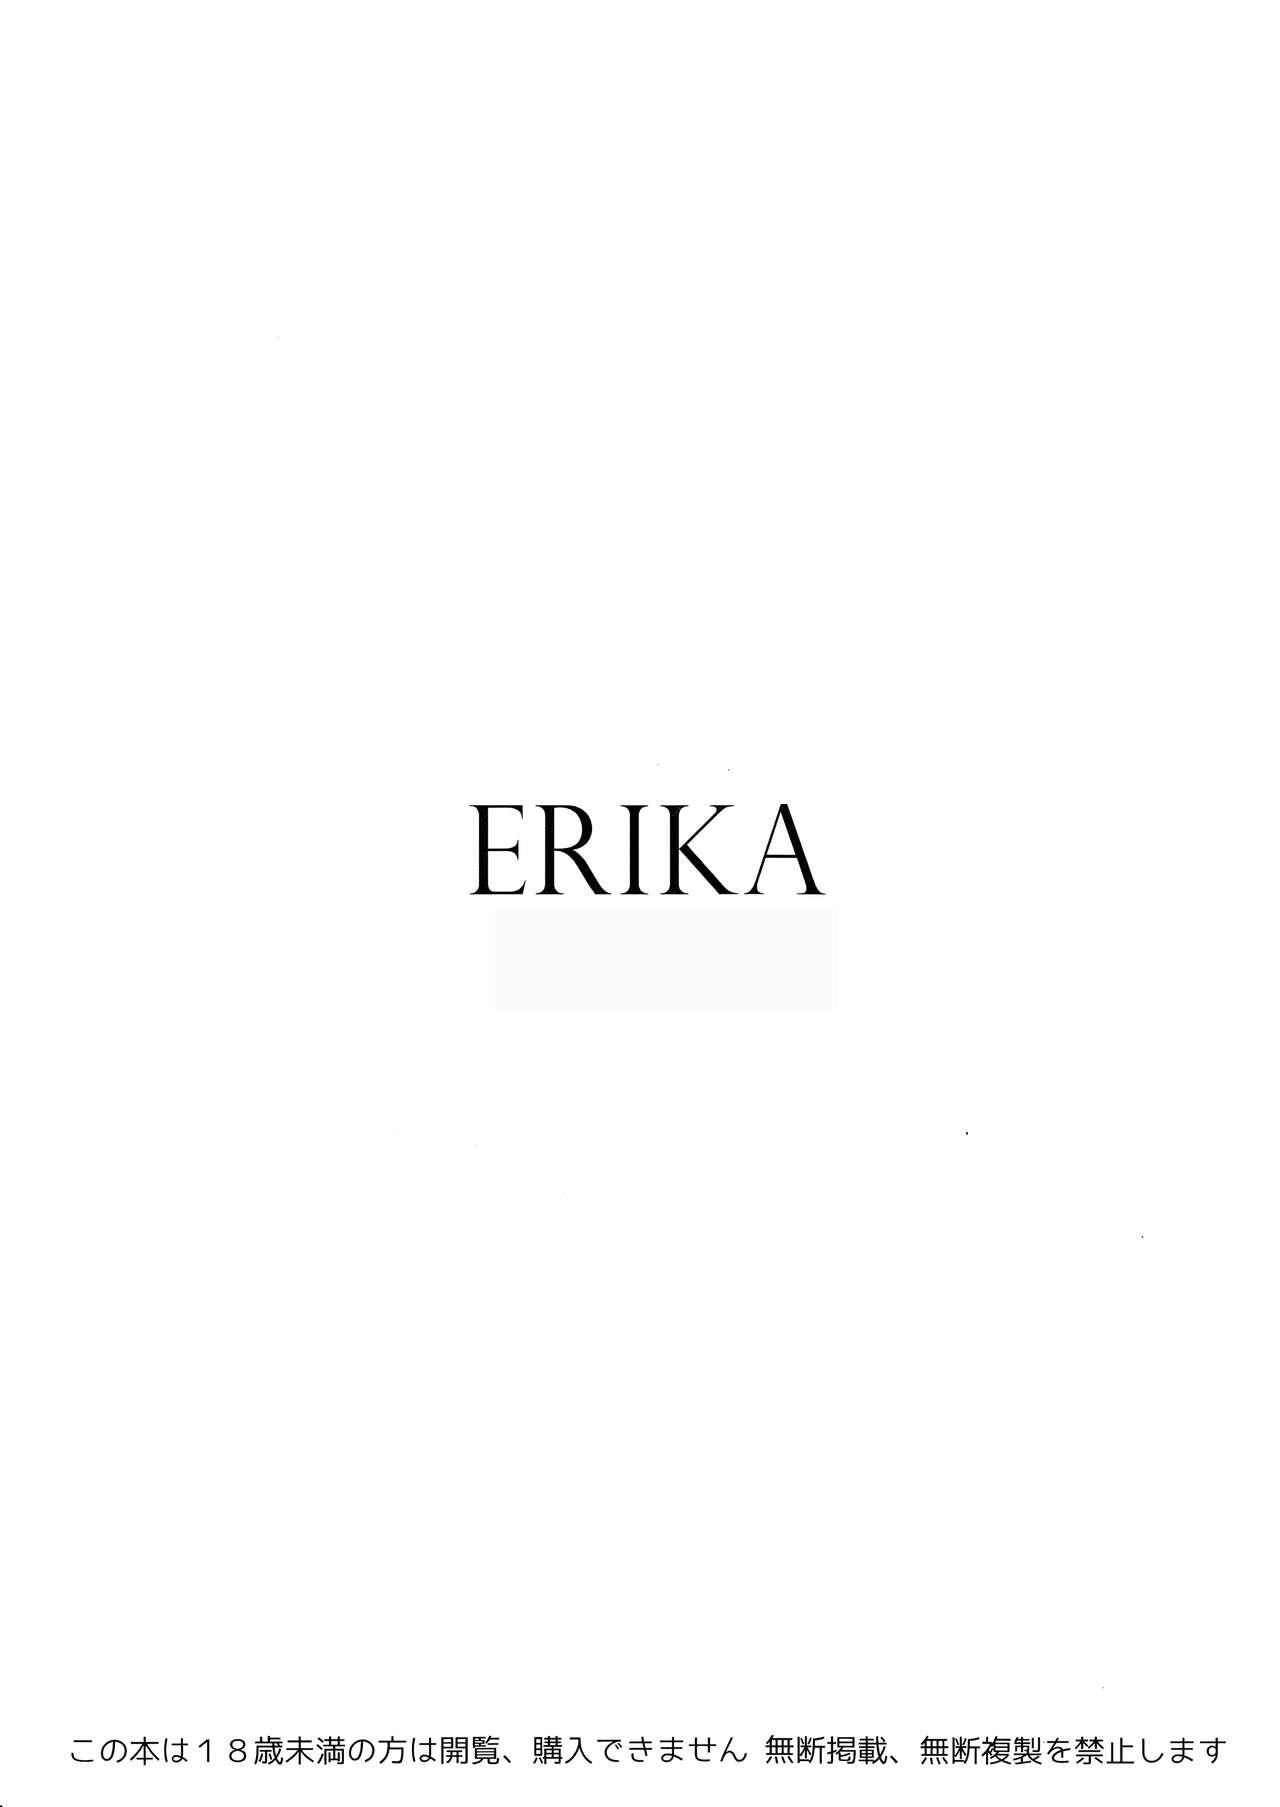 Bear ERIKA Vol. 1-3 - Girls und panzer Style - Picture 3